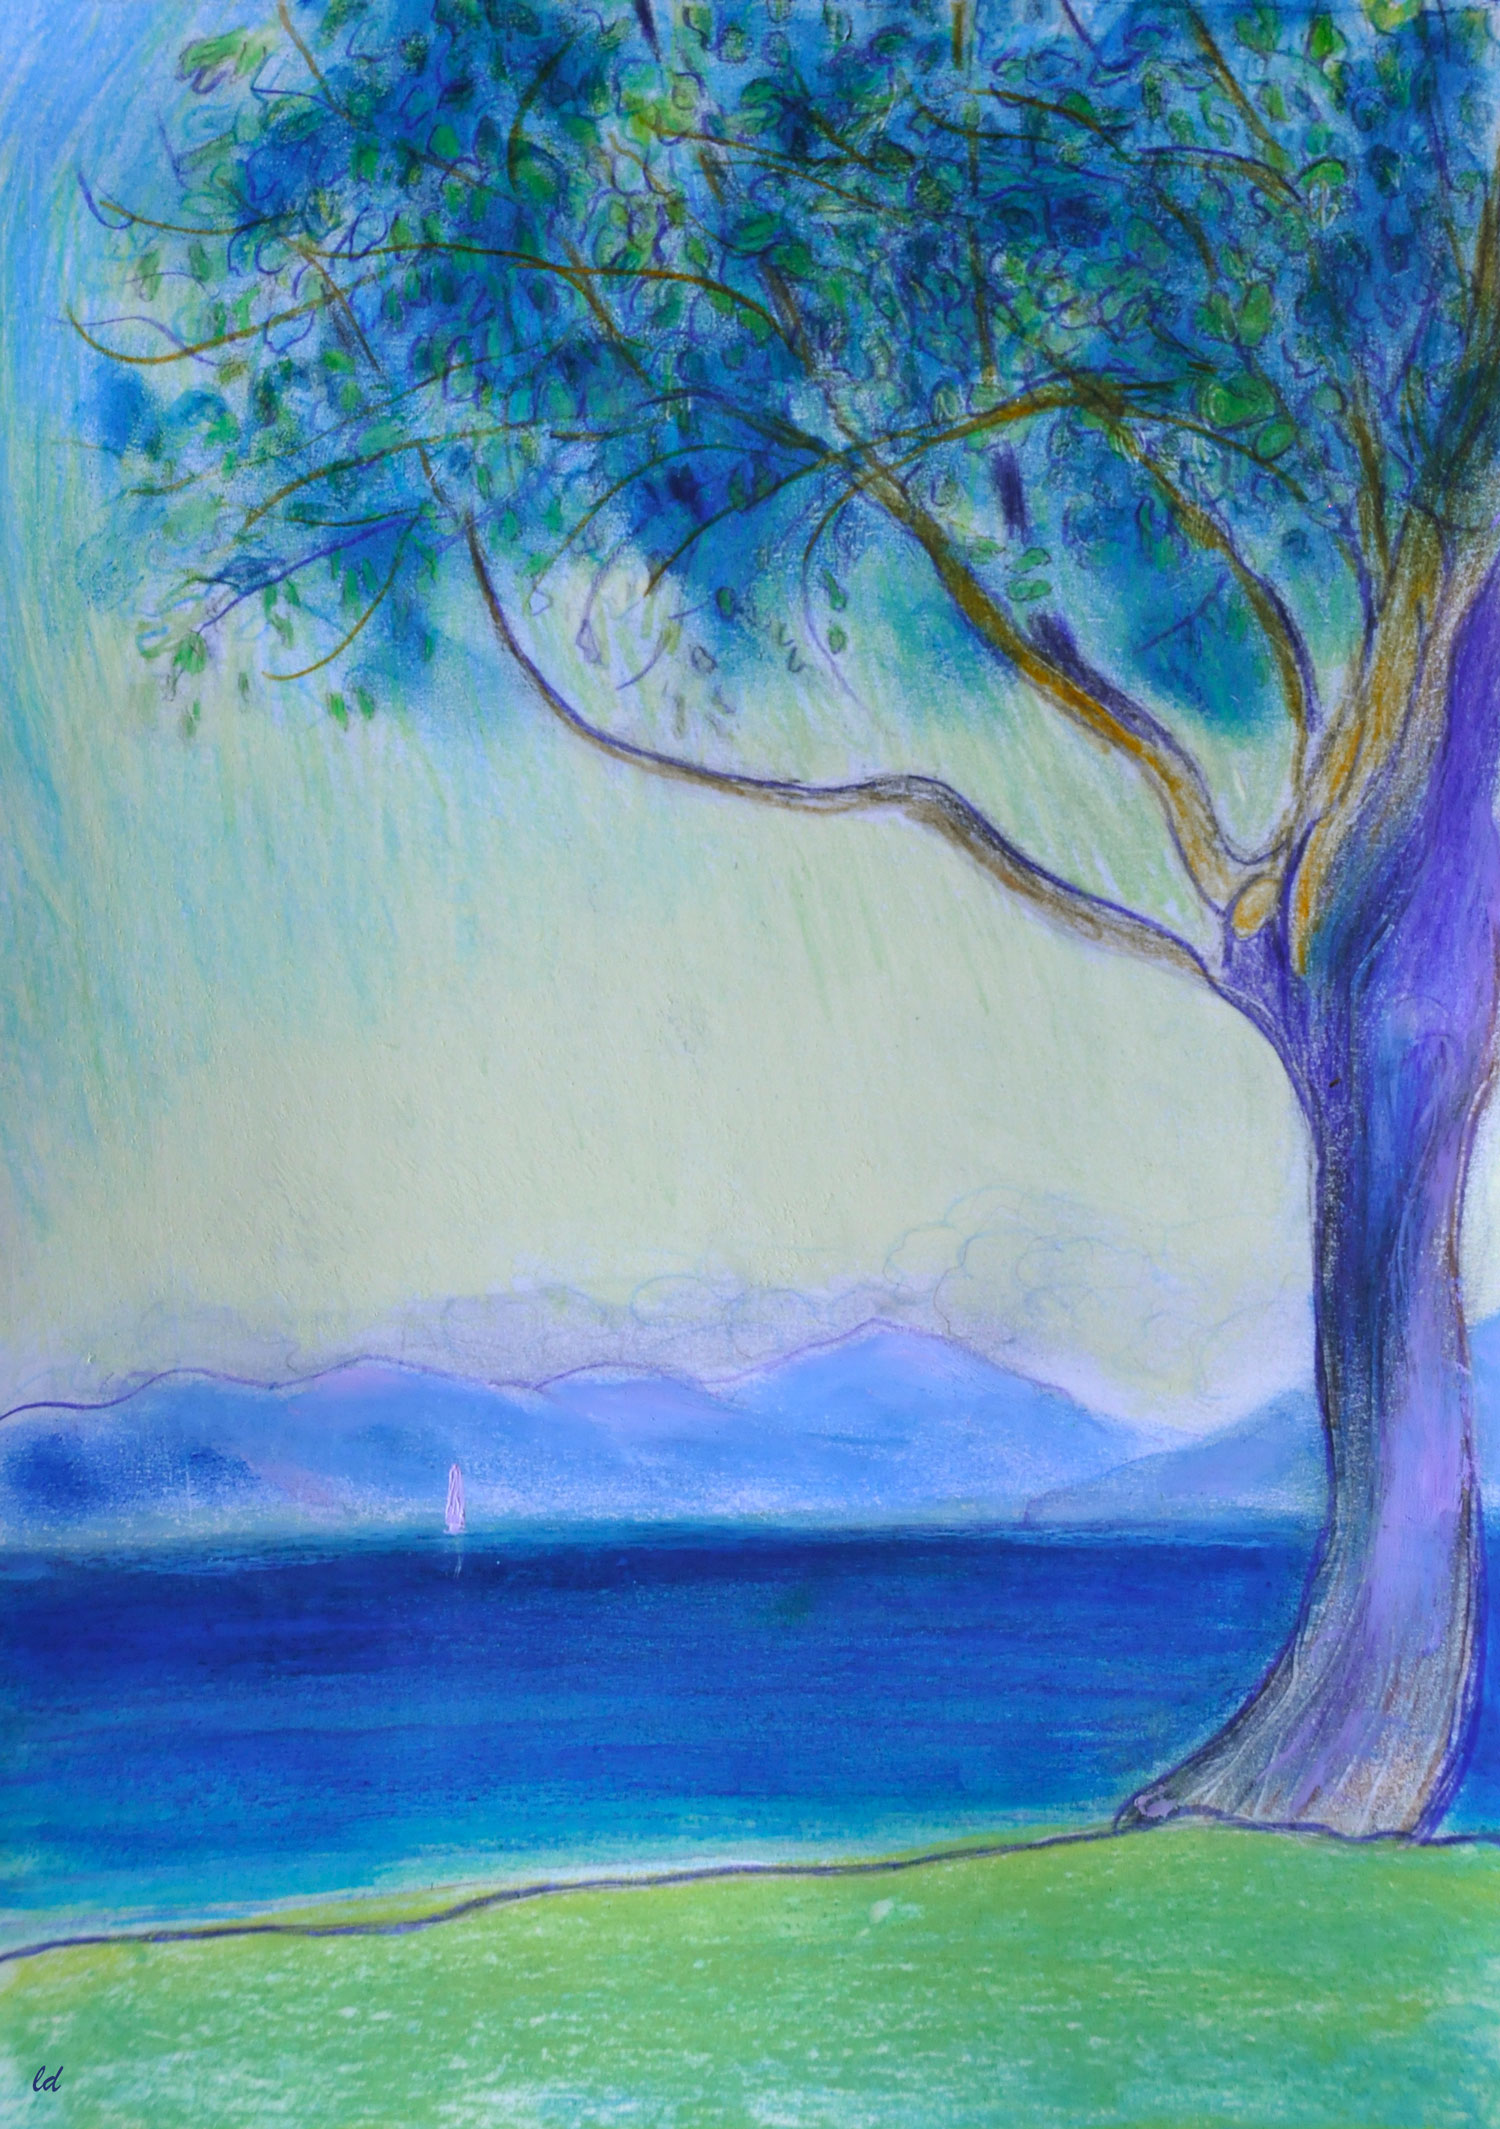 Lac Léman, St Prex, 30. Crayon de couleur, pastel et huile sur papier, 29x21, 2021